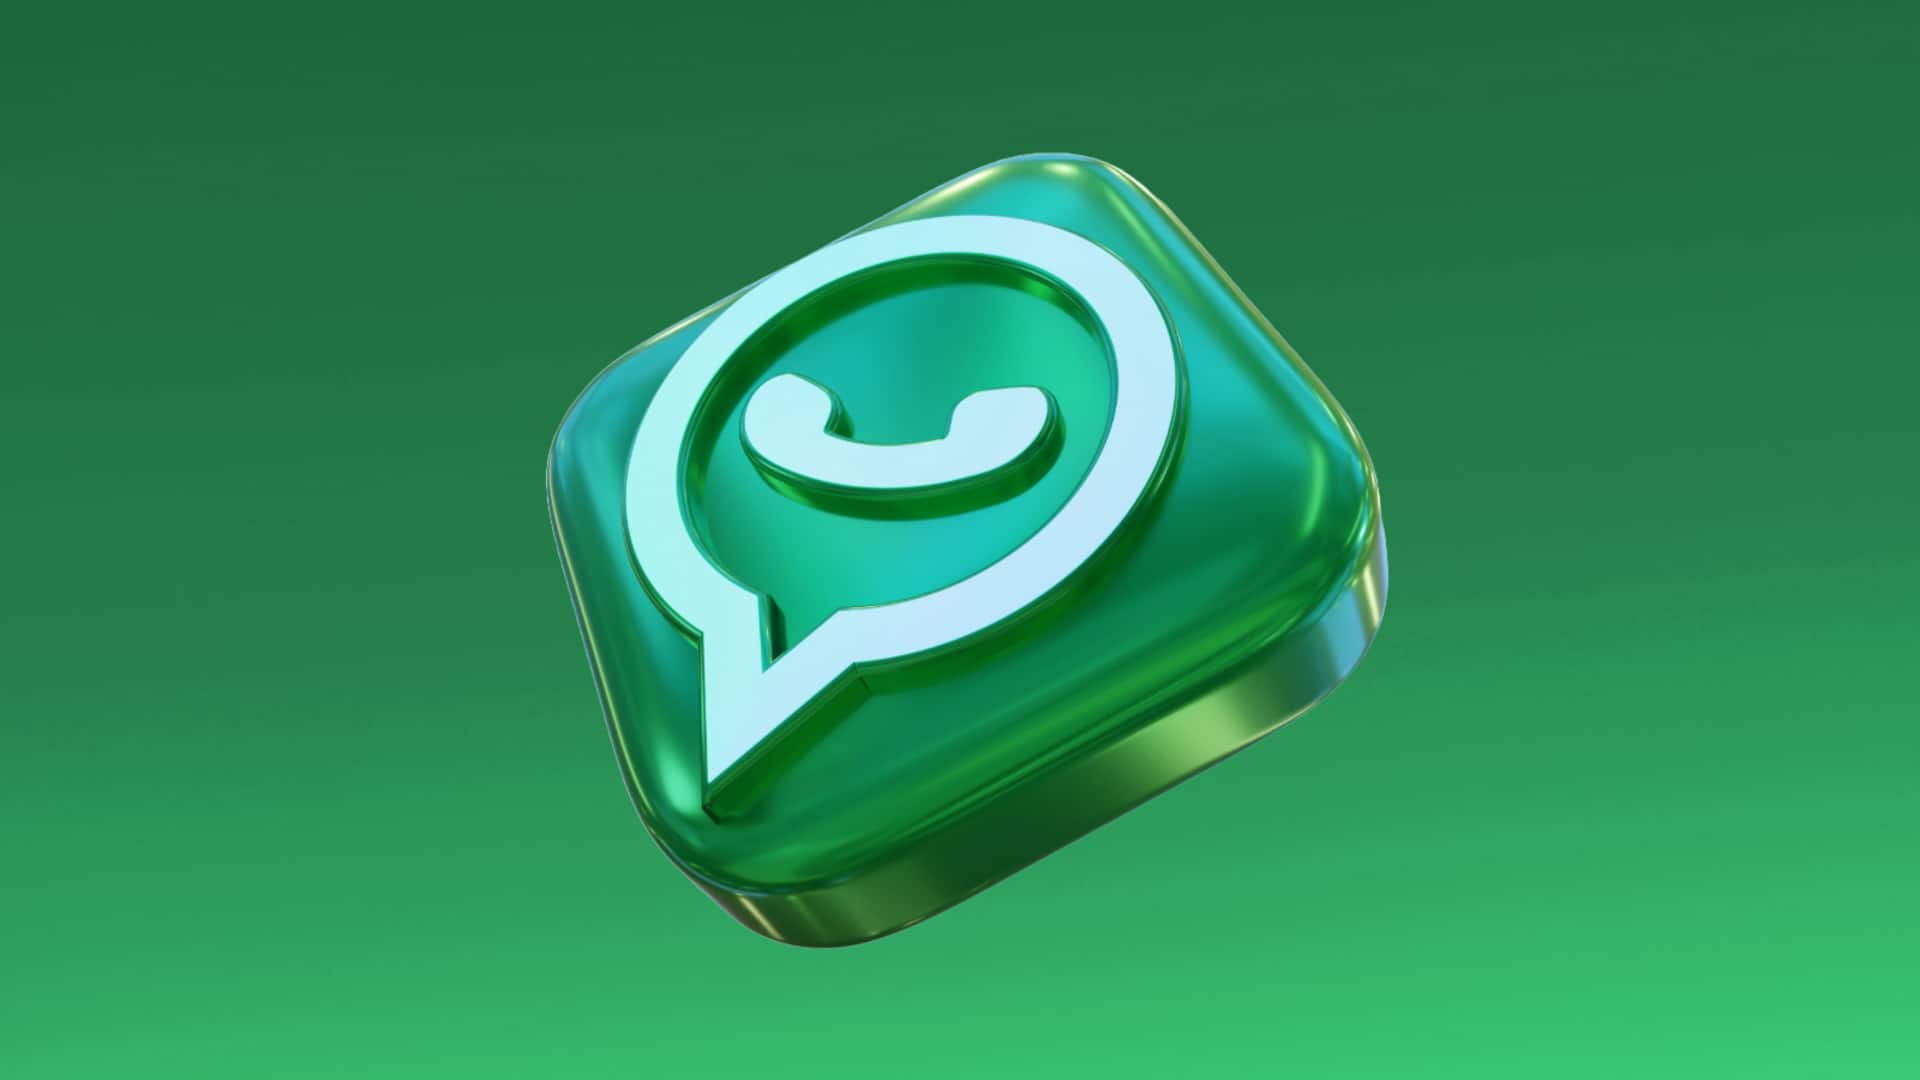 व्हाट्सऐप चैनल का स्वामित्व दूसरे को ट्रांसफर कर सकेंगे iOS यूजर्स, मिलेगा नया फीचर